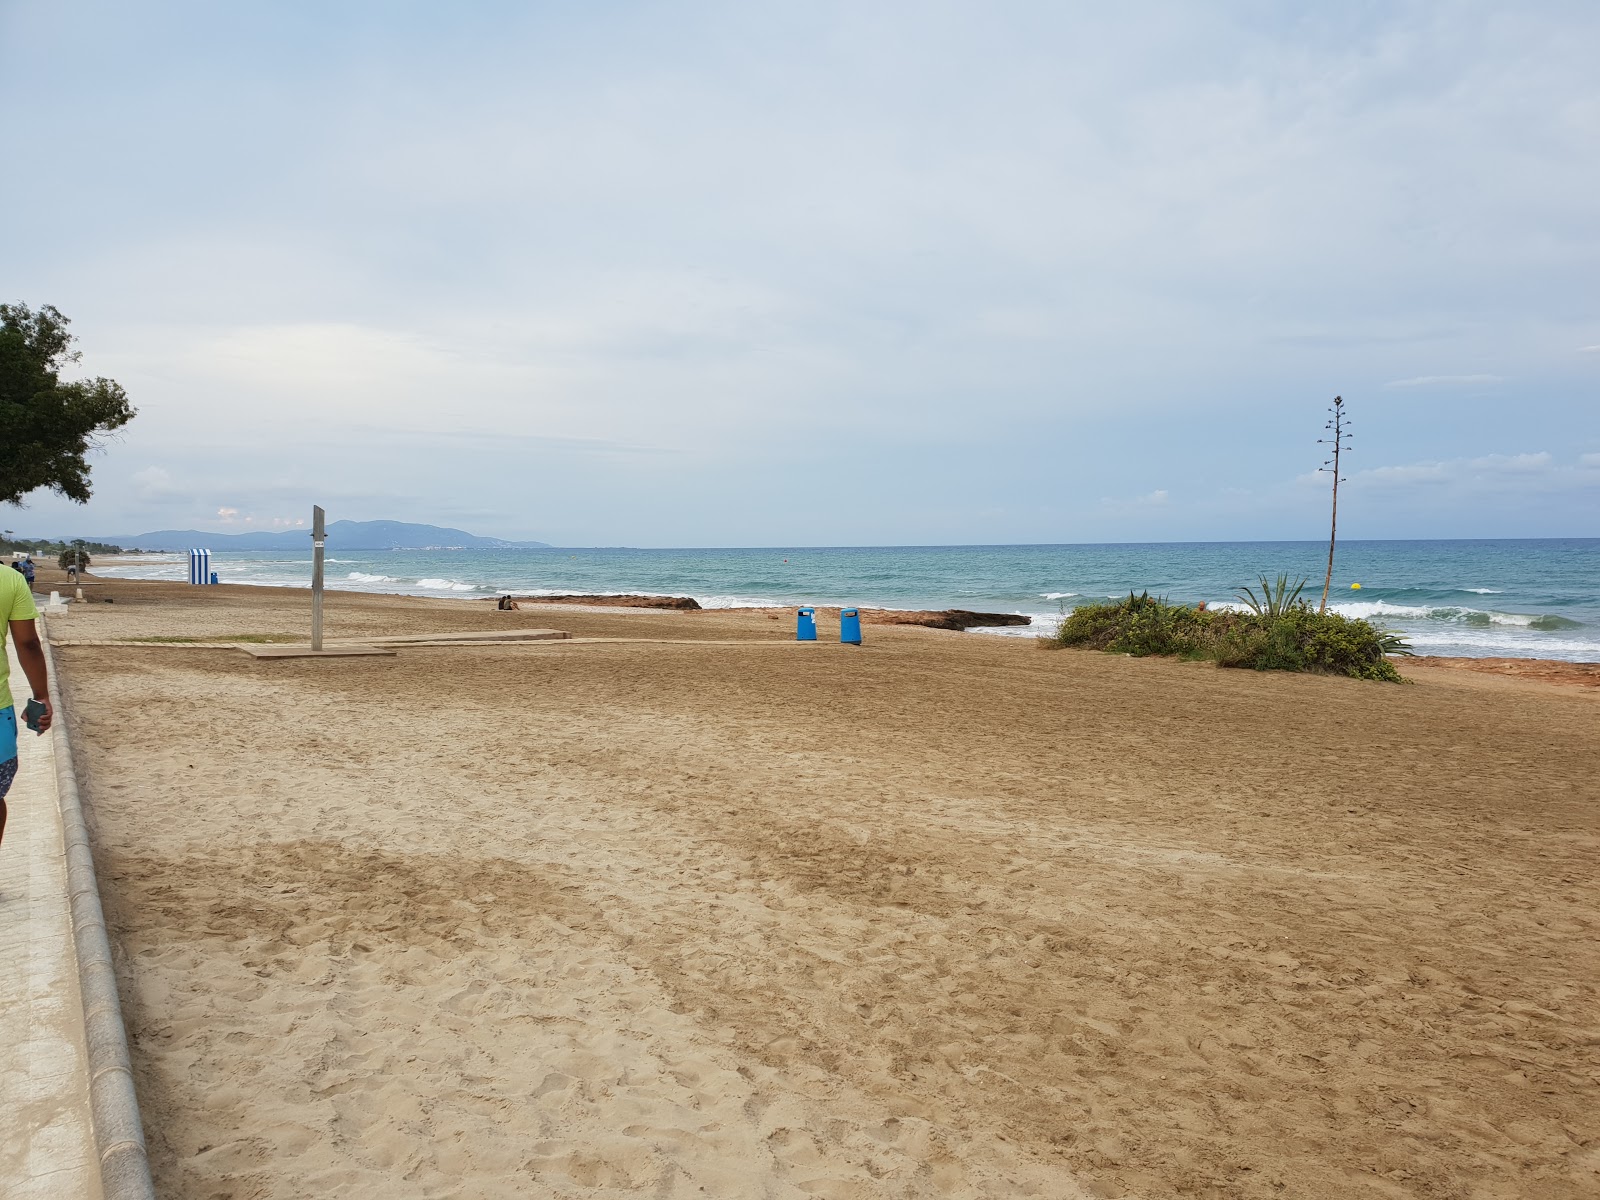 Playa de les Amplaries 2'in fotoğrafı yeşil su yüzey ile